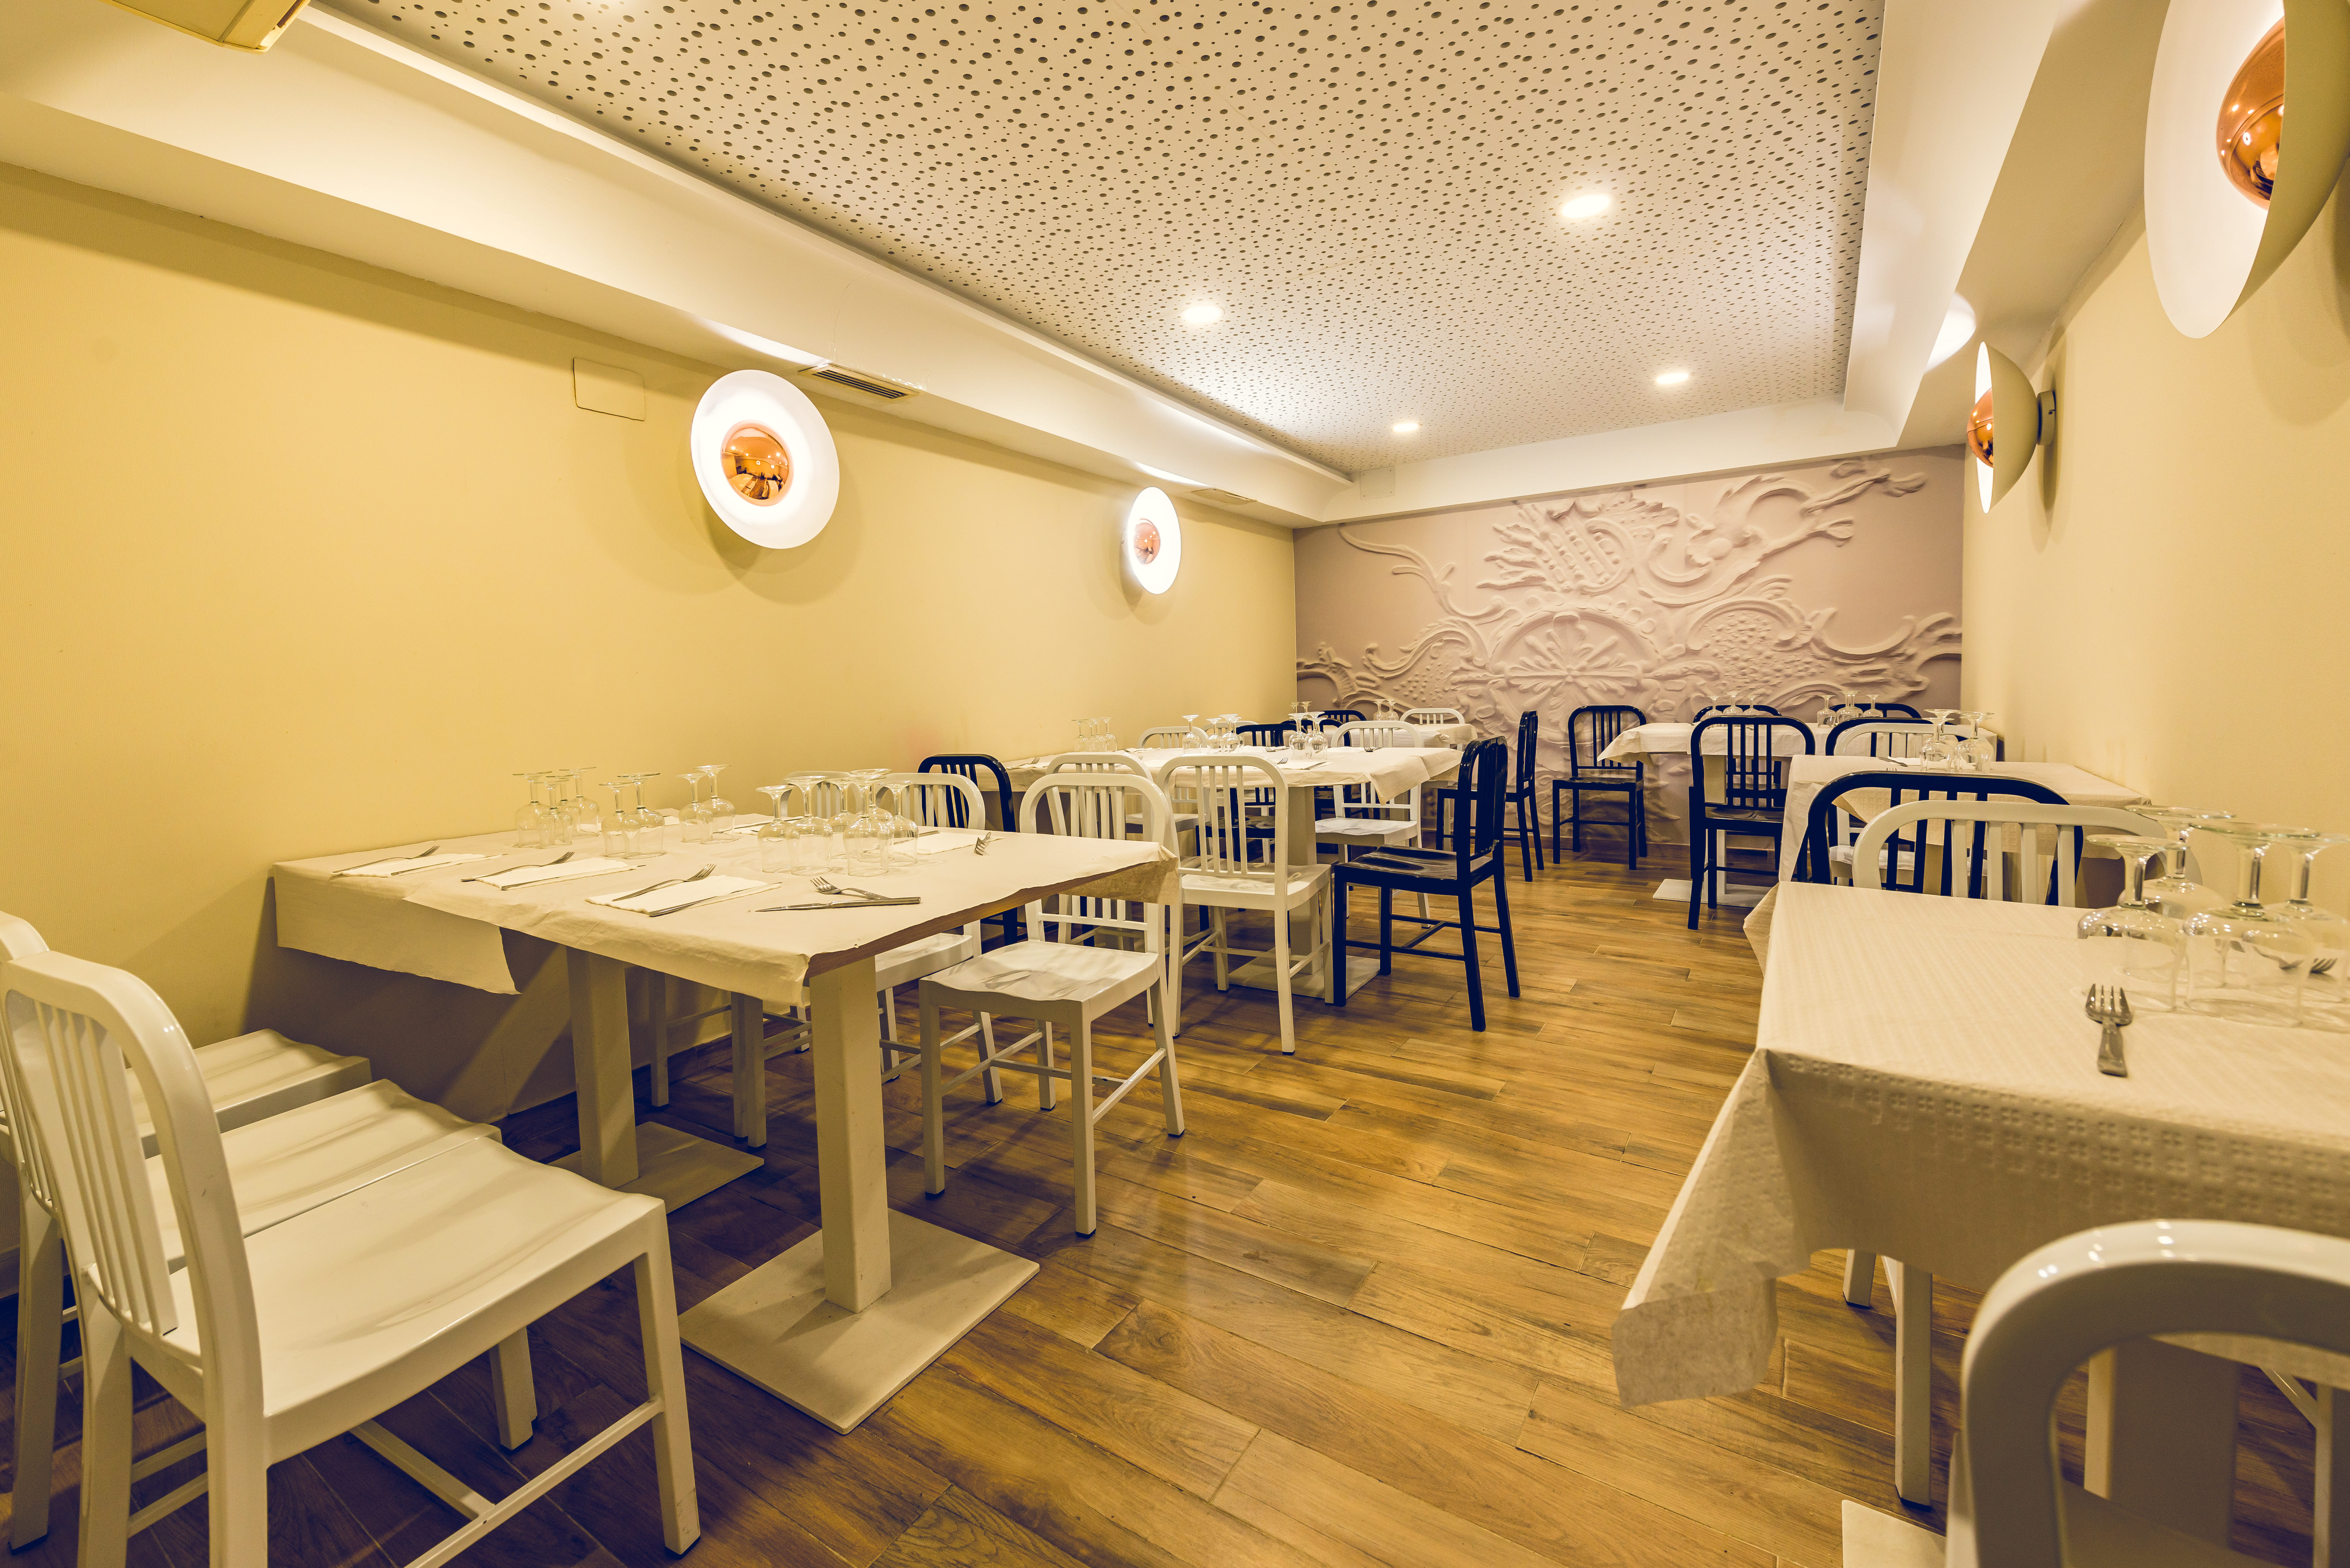 Restaurante Arcos de Toledo menús y comida casera de calidad